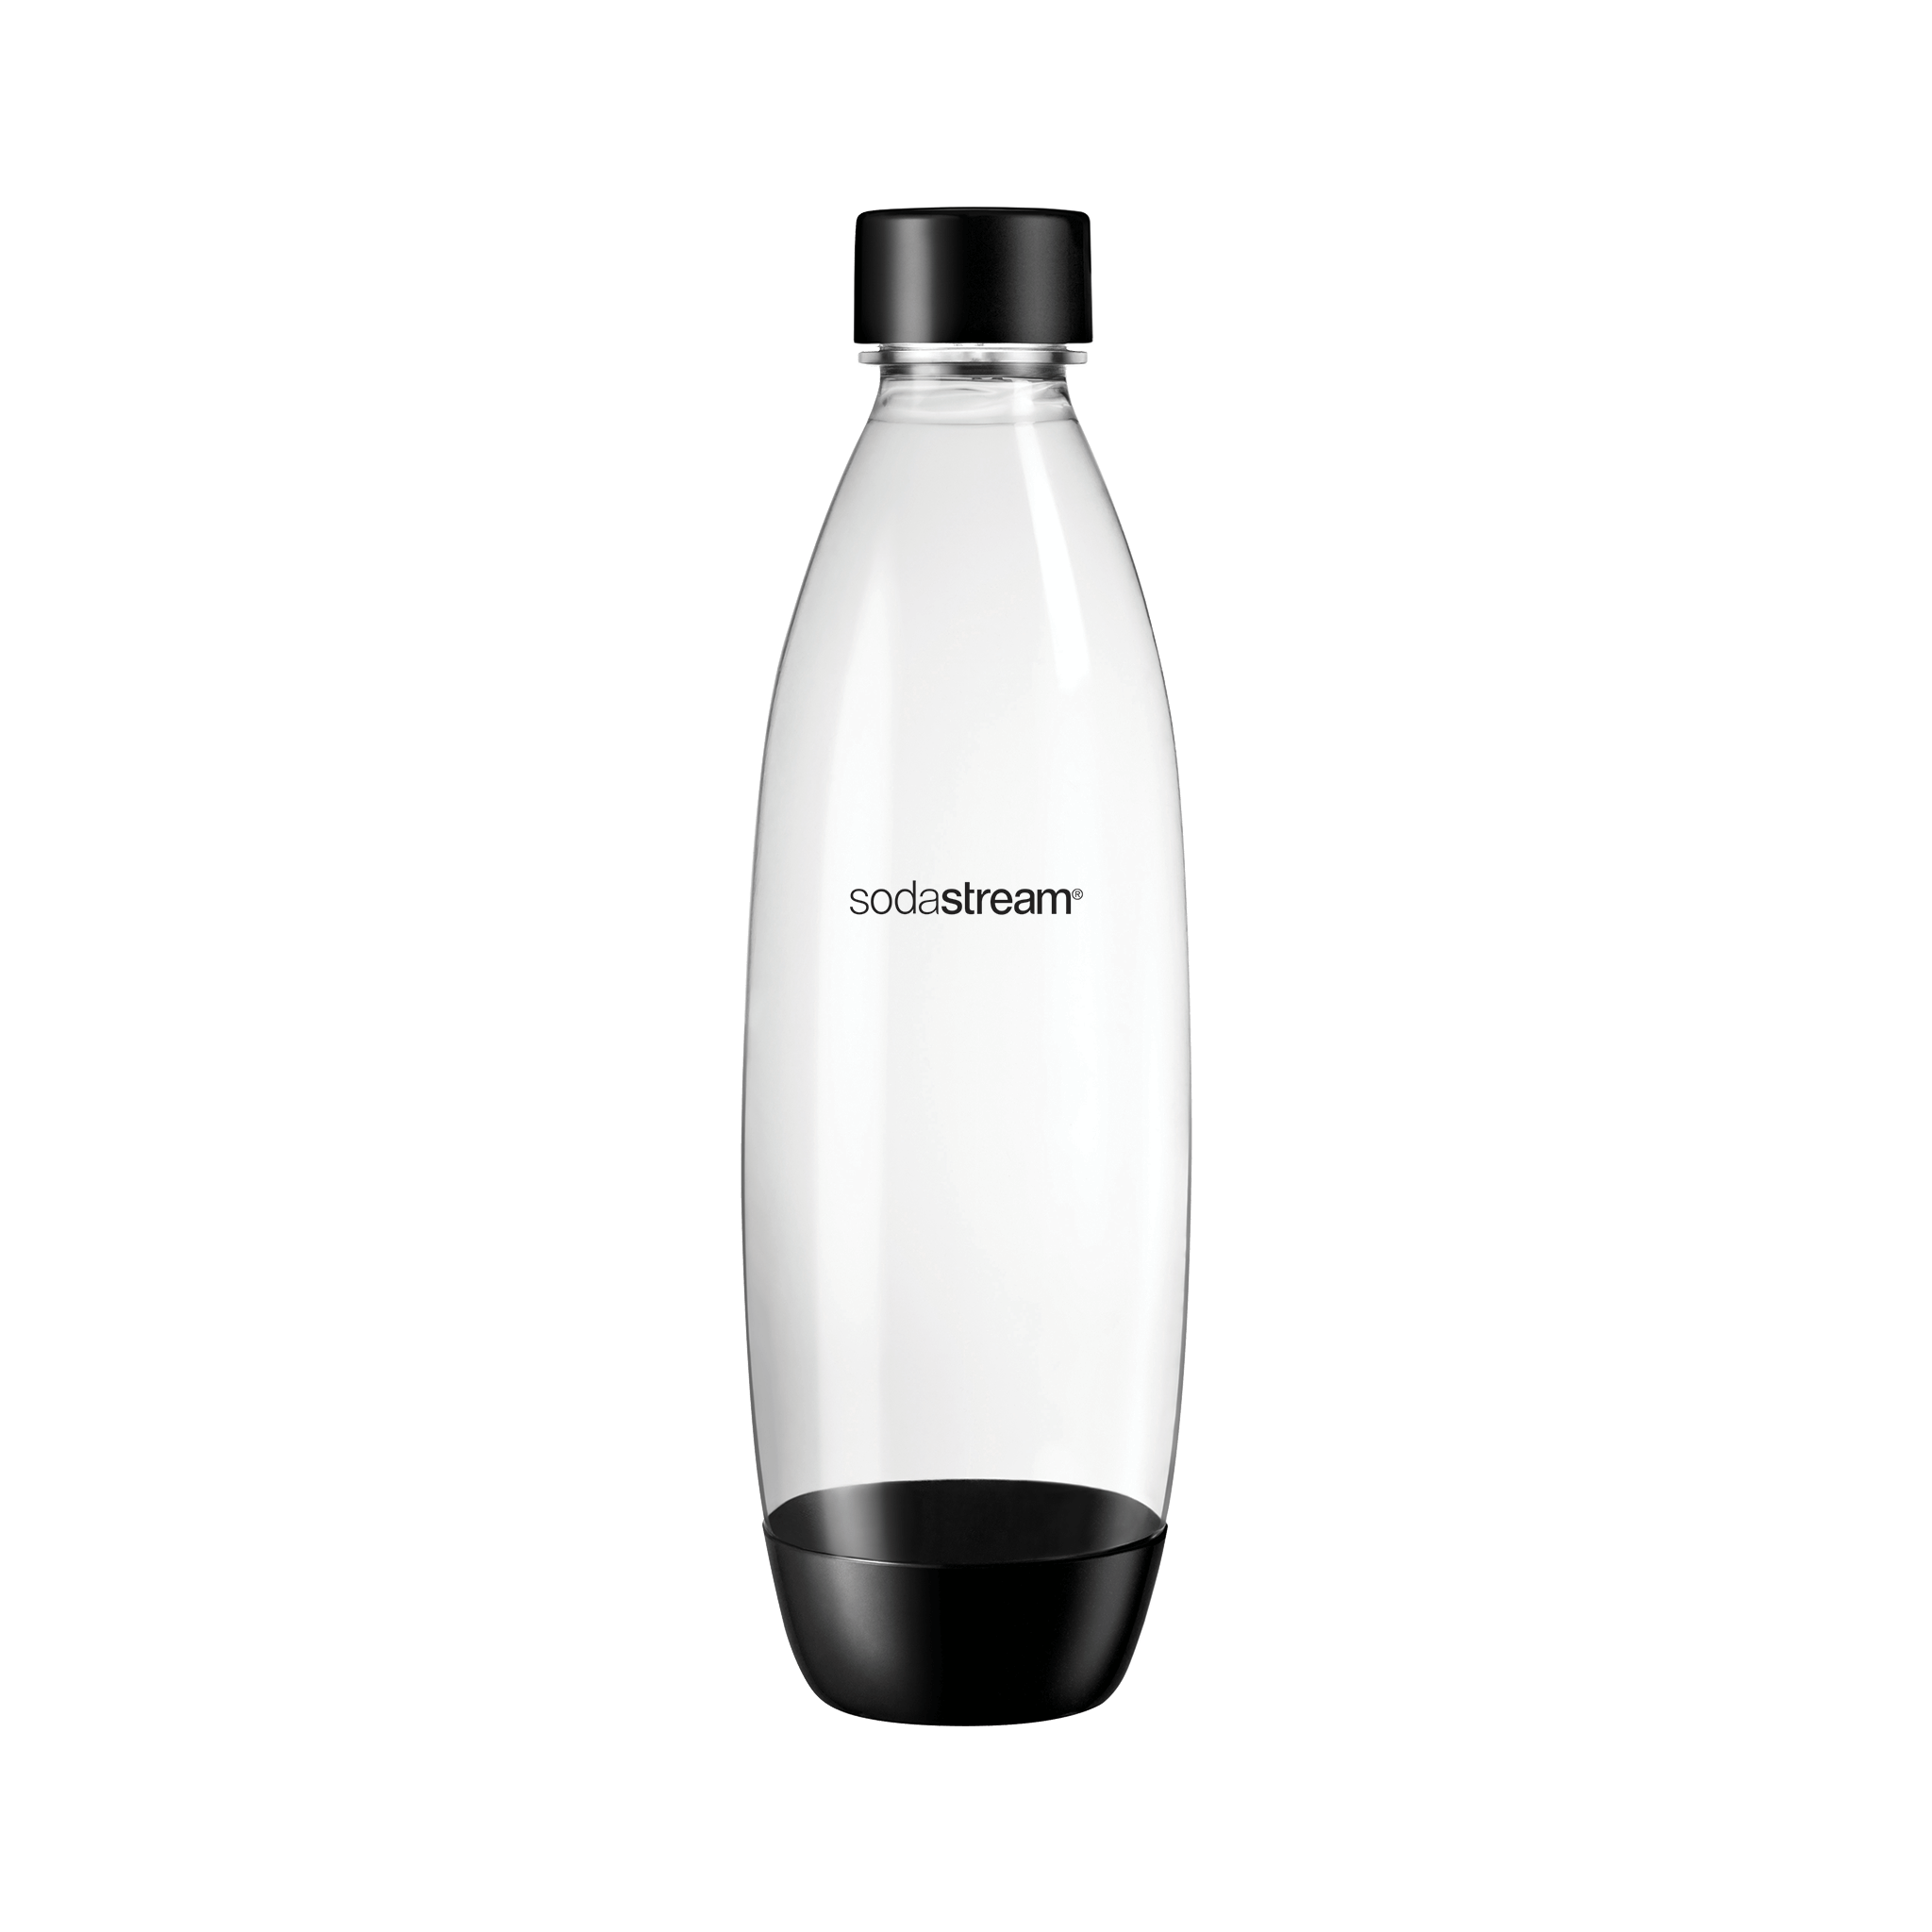 1L Glass Bottle & 1L Reusable Plastic Bottle